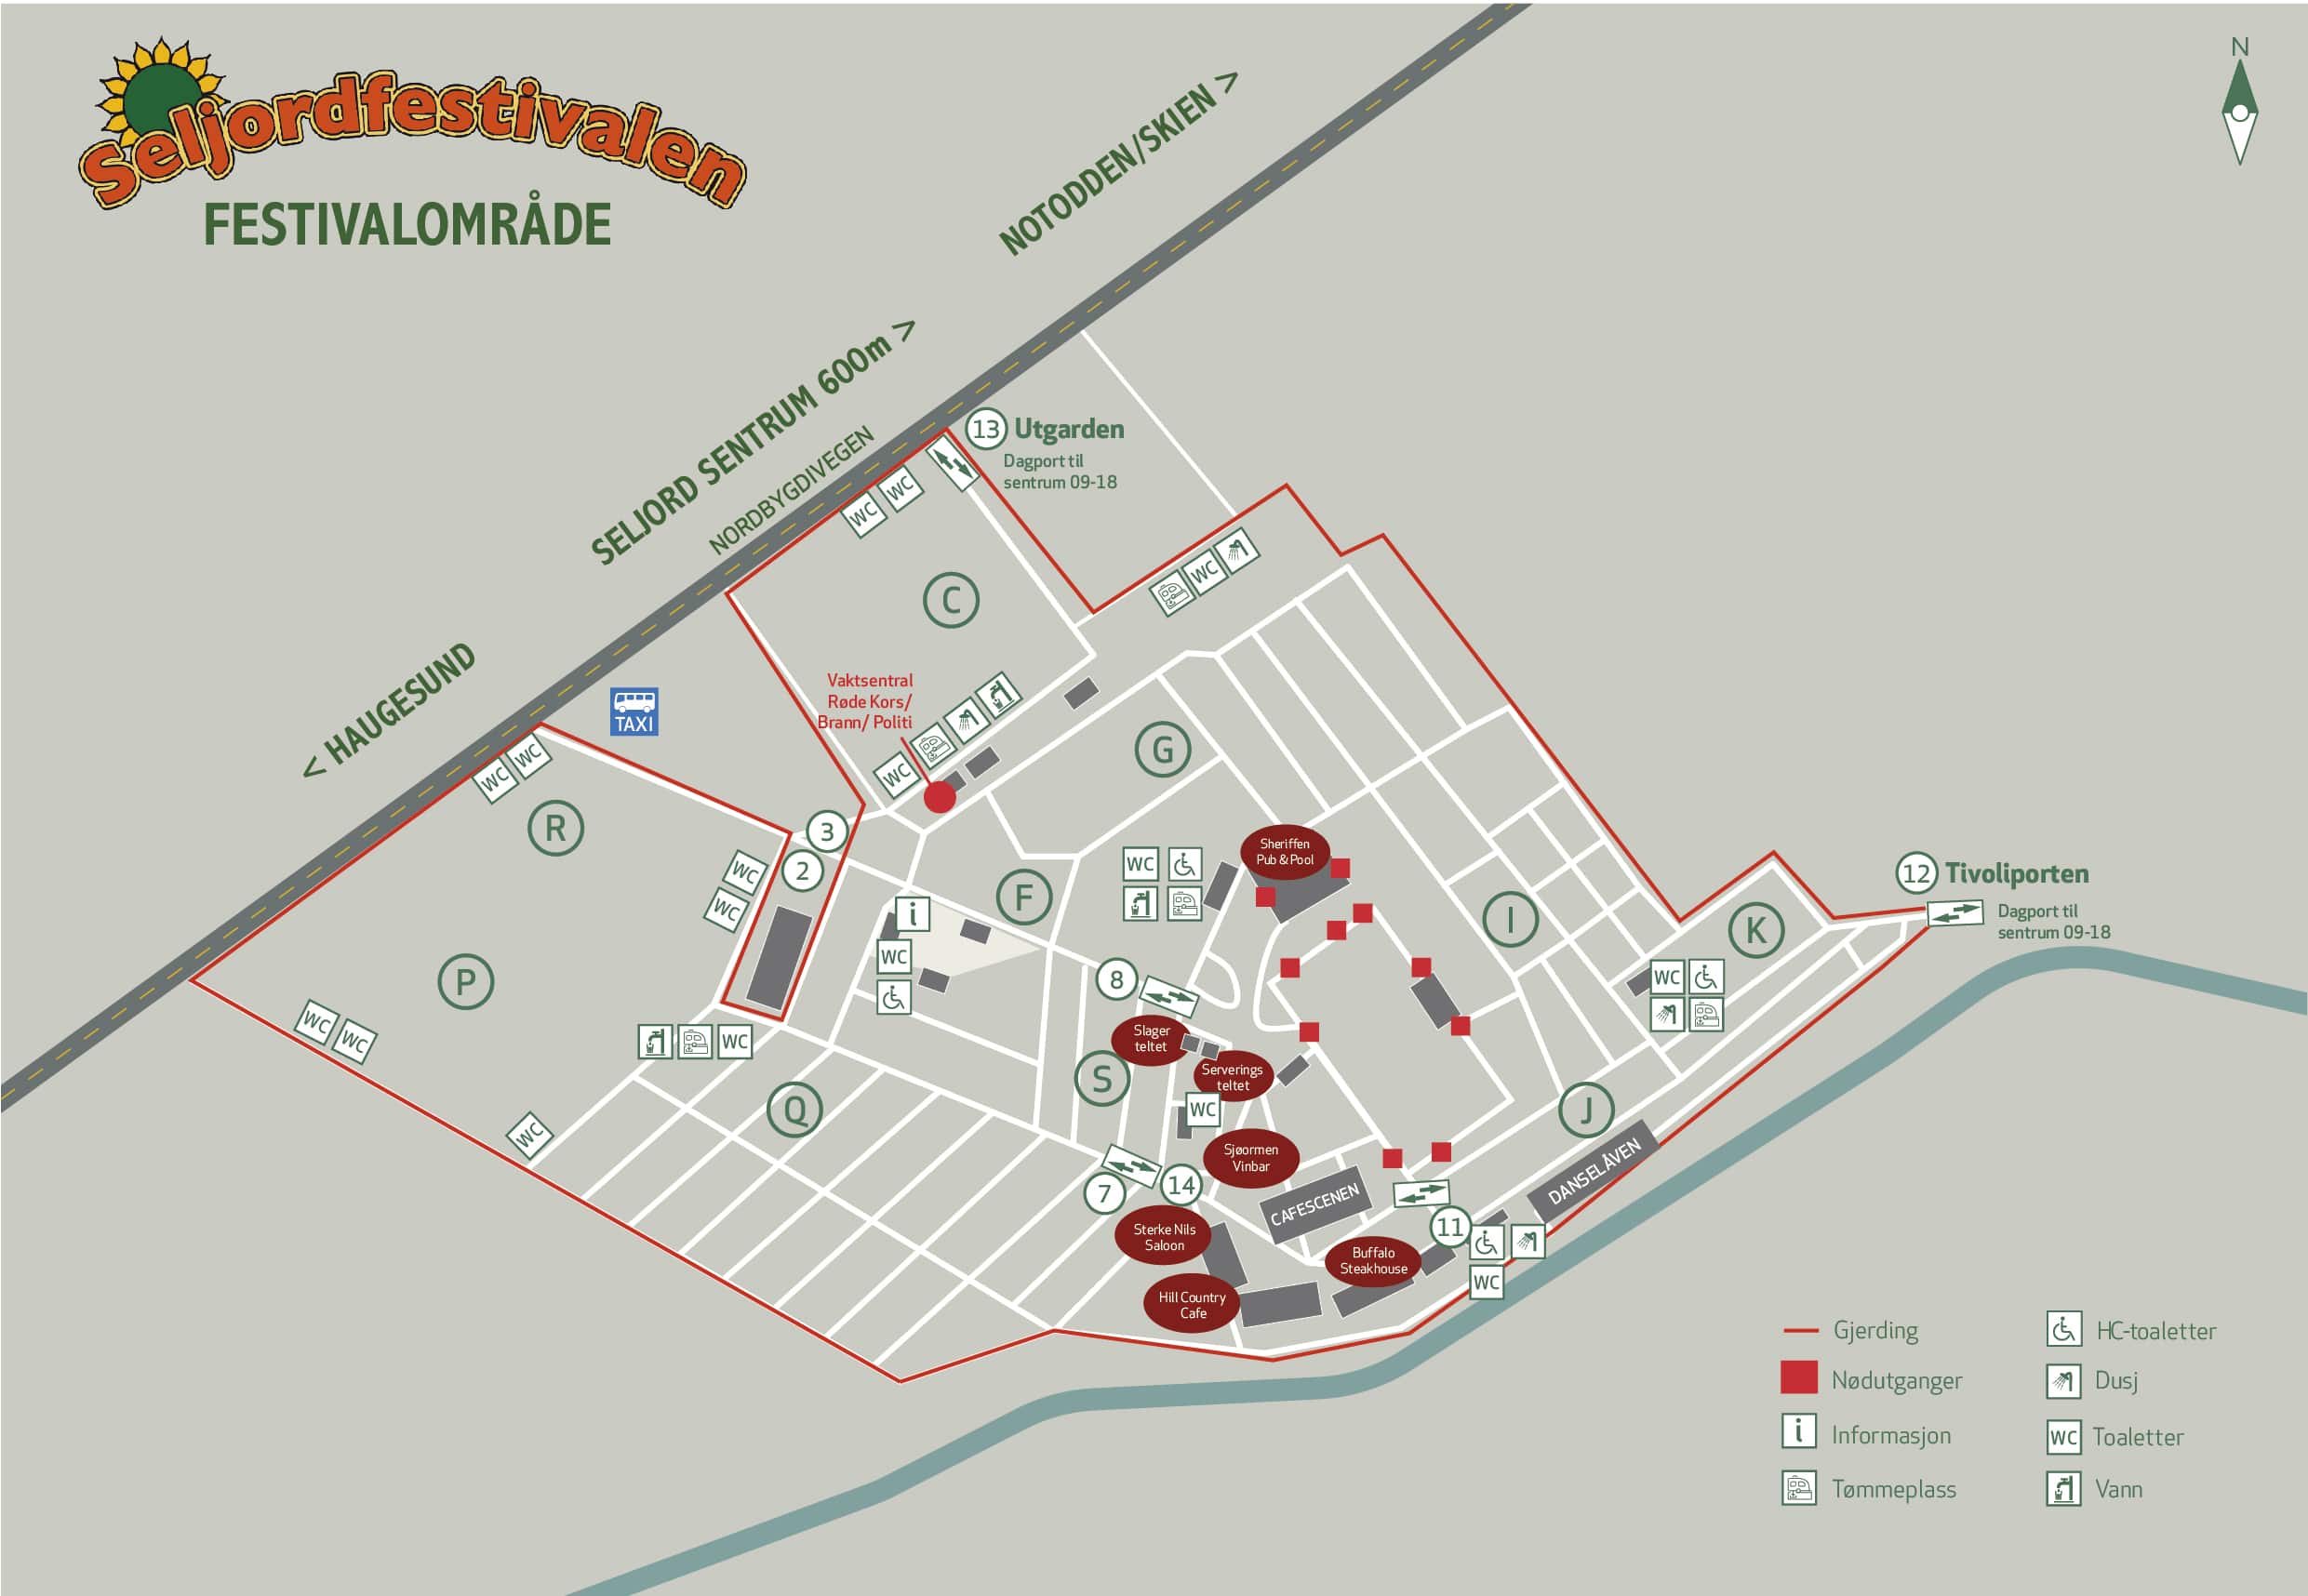 Kart over festivalområdet på Seljordfestivalen